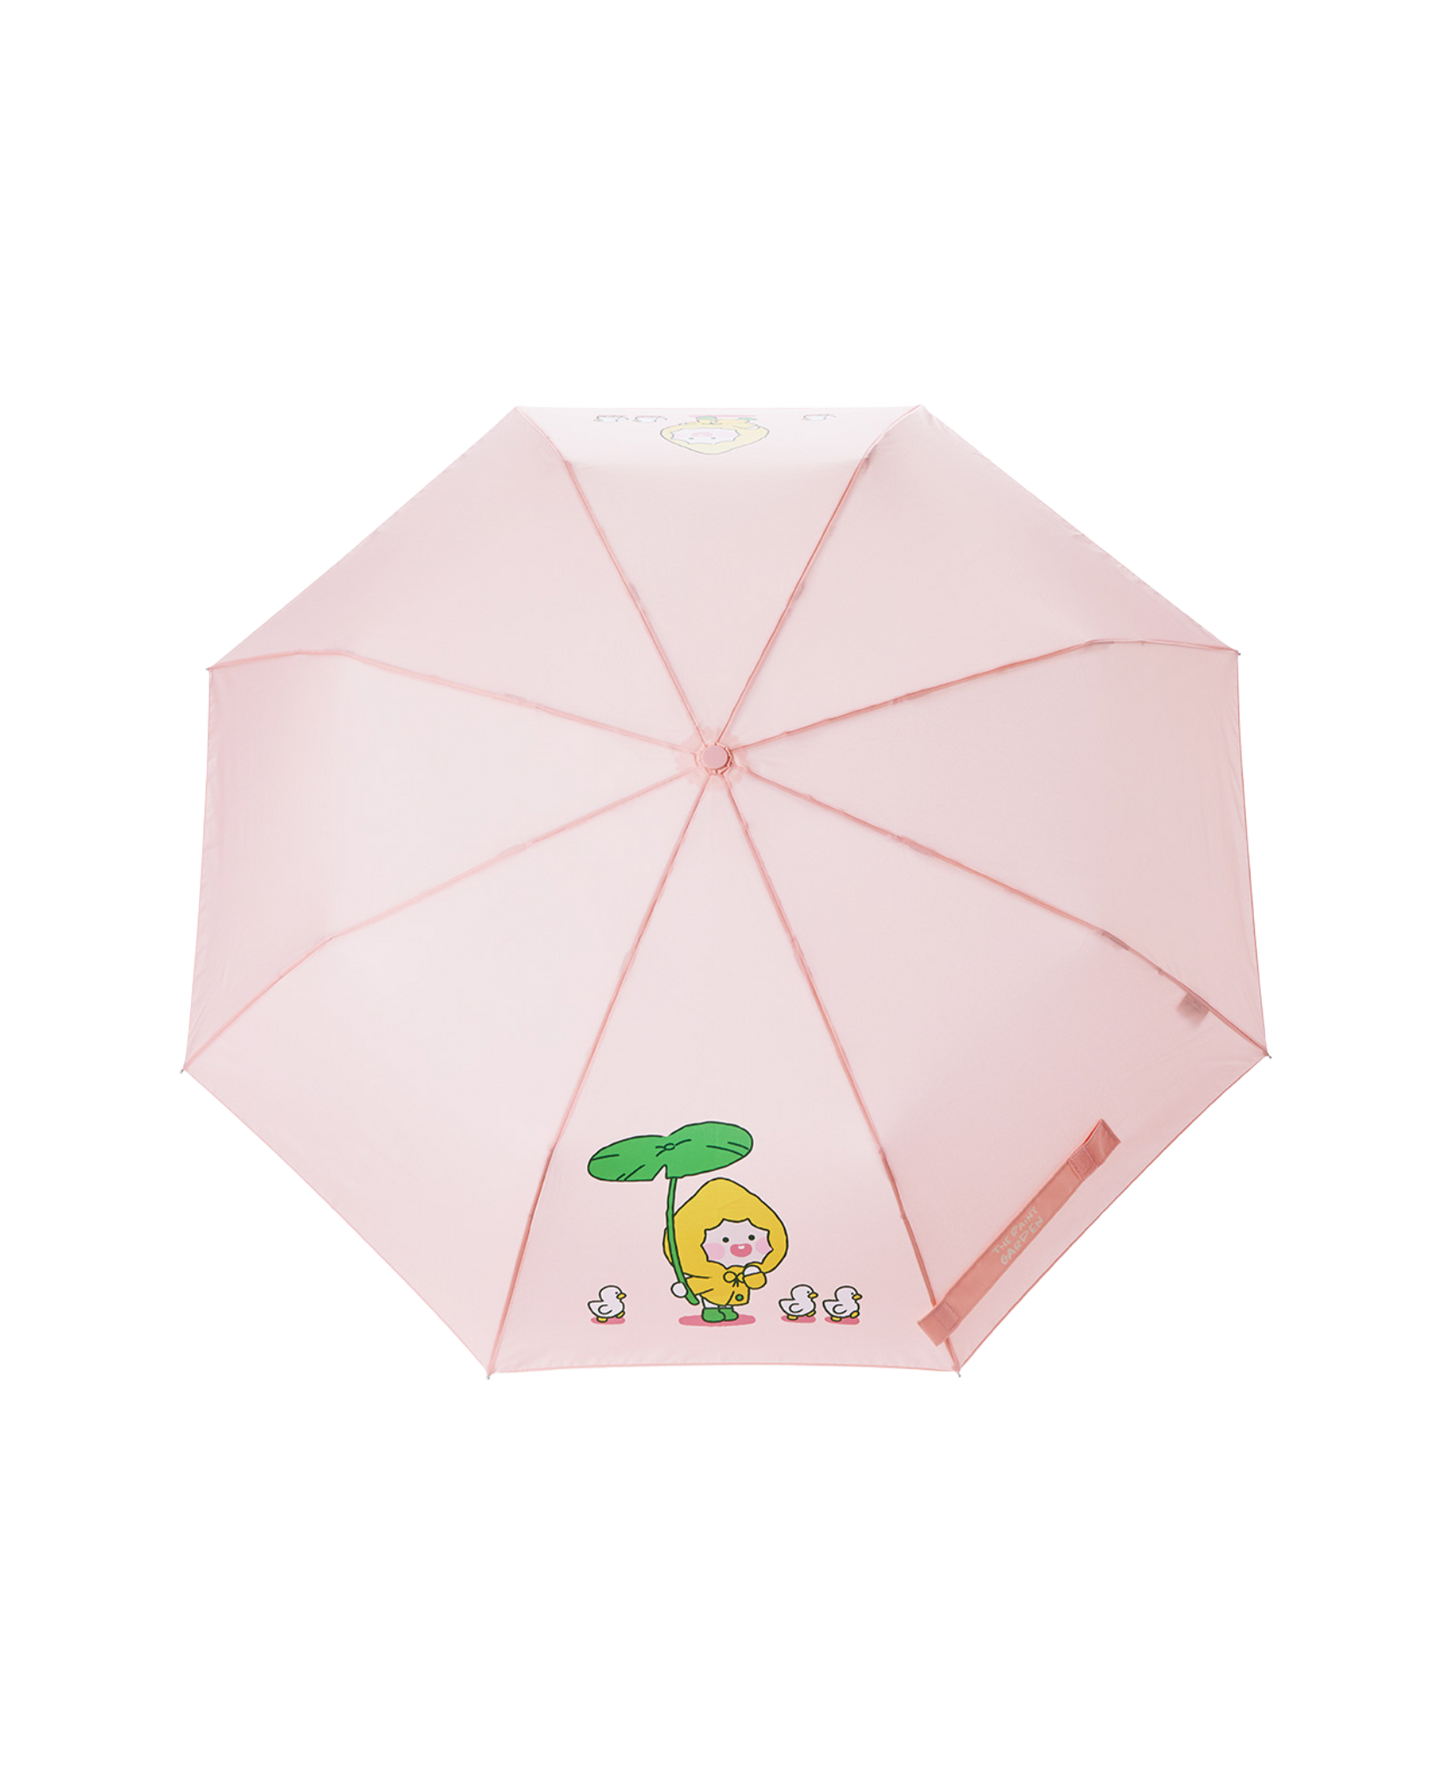 APEACH Rainy Garden Umbrella